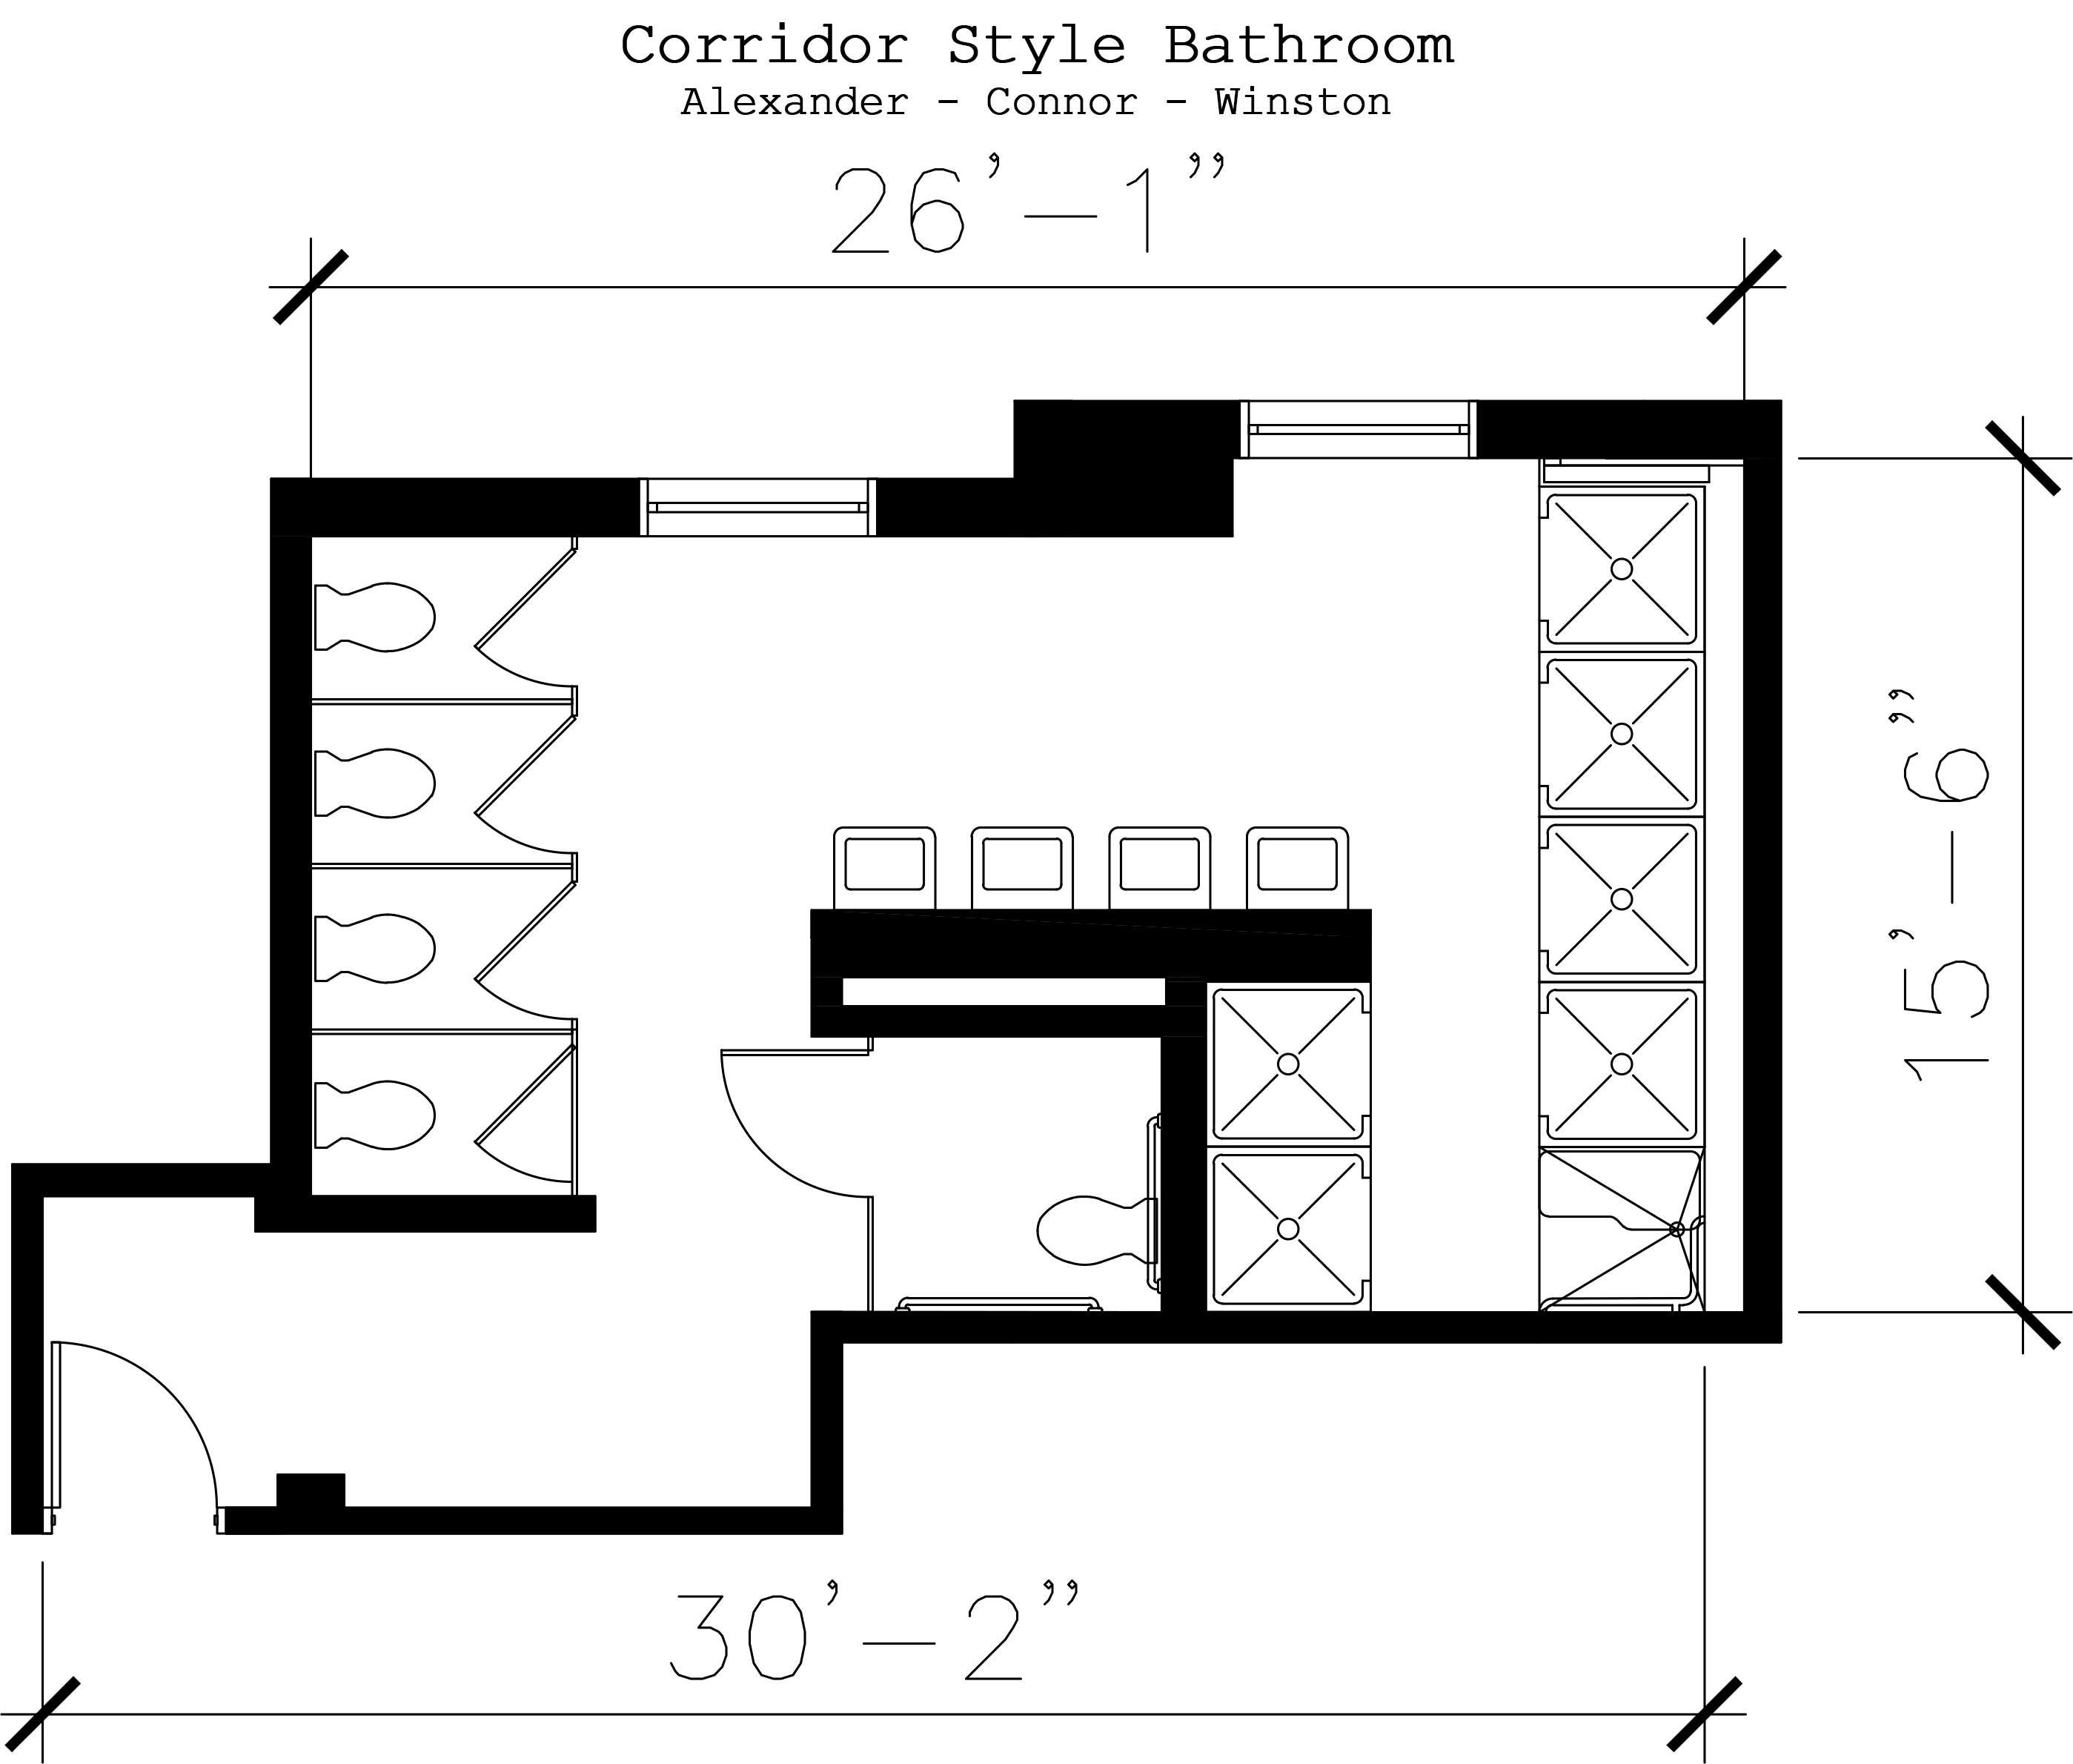 CorridorStyle Double UNC Housing